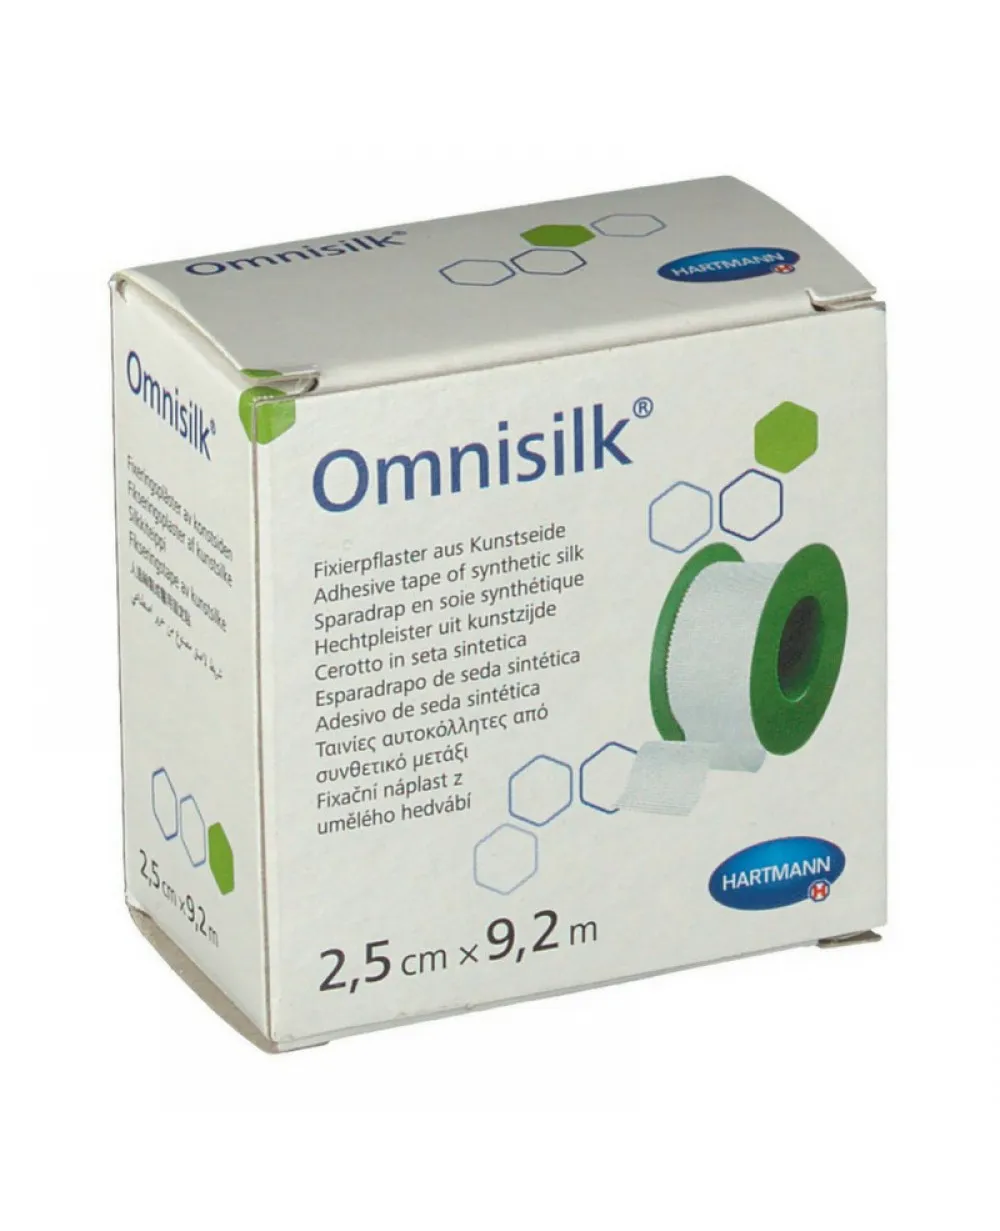 Omnisilk plasture matase 2,5cm x 9,2cm (Hartmann)